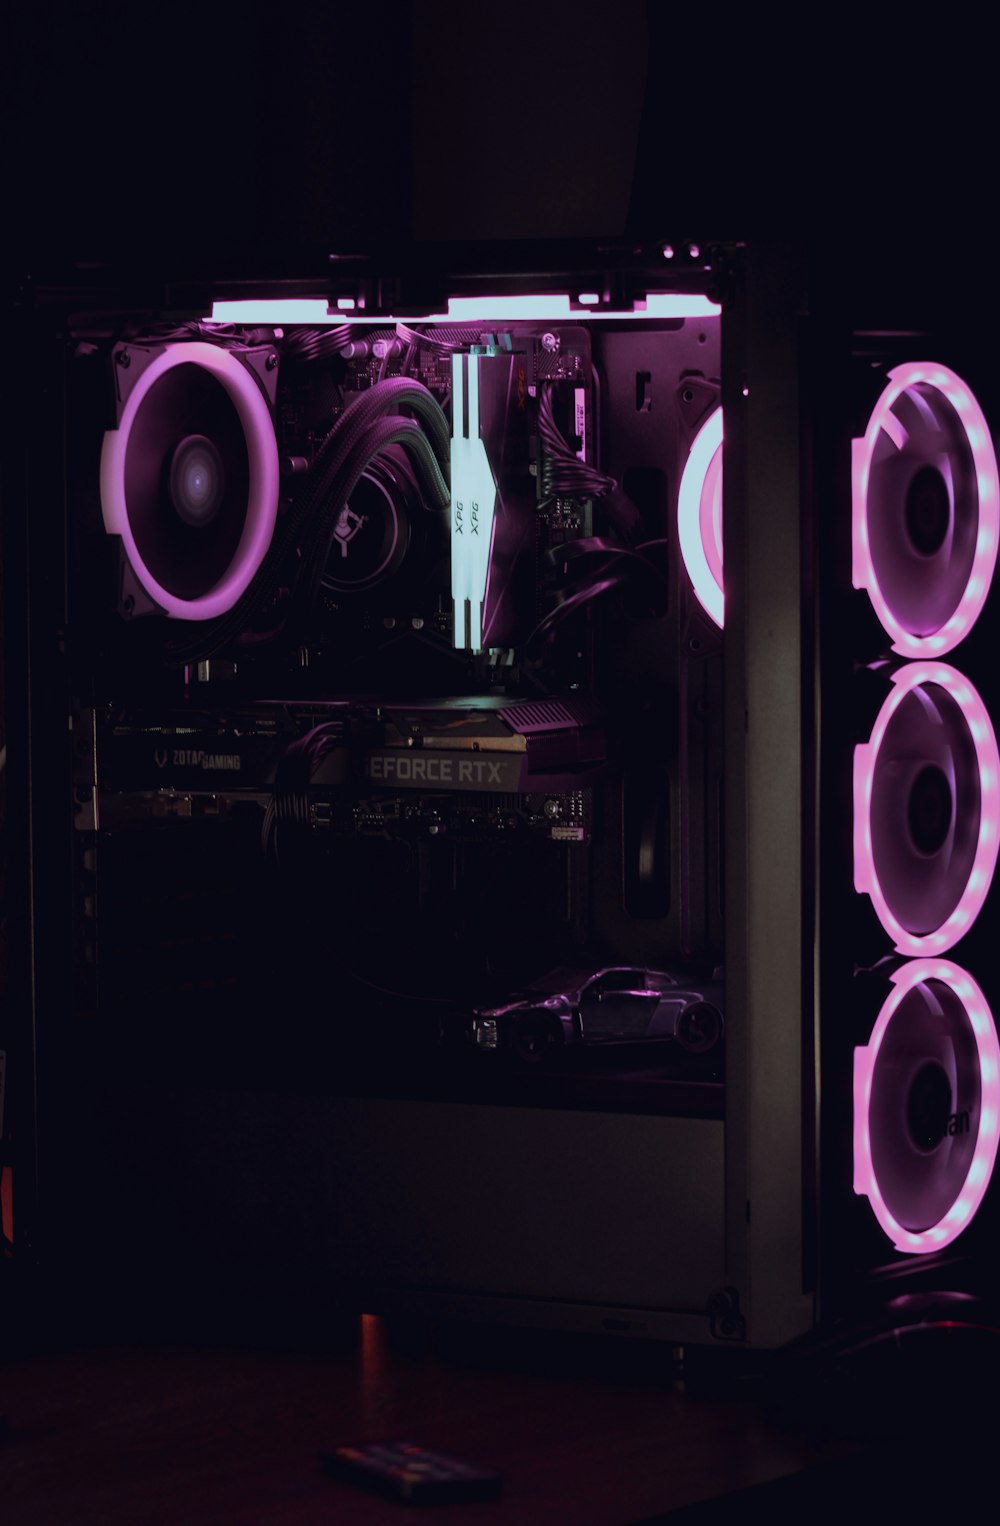 Una carcasa de computadora se ilumina con luces púrpuras